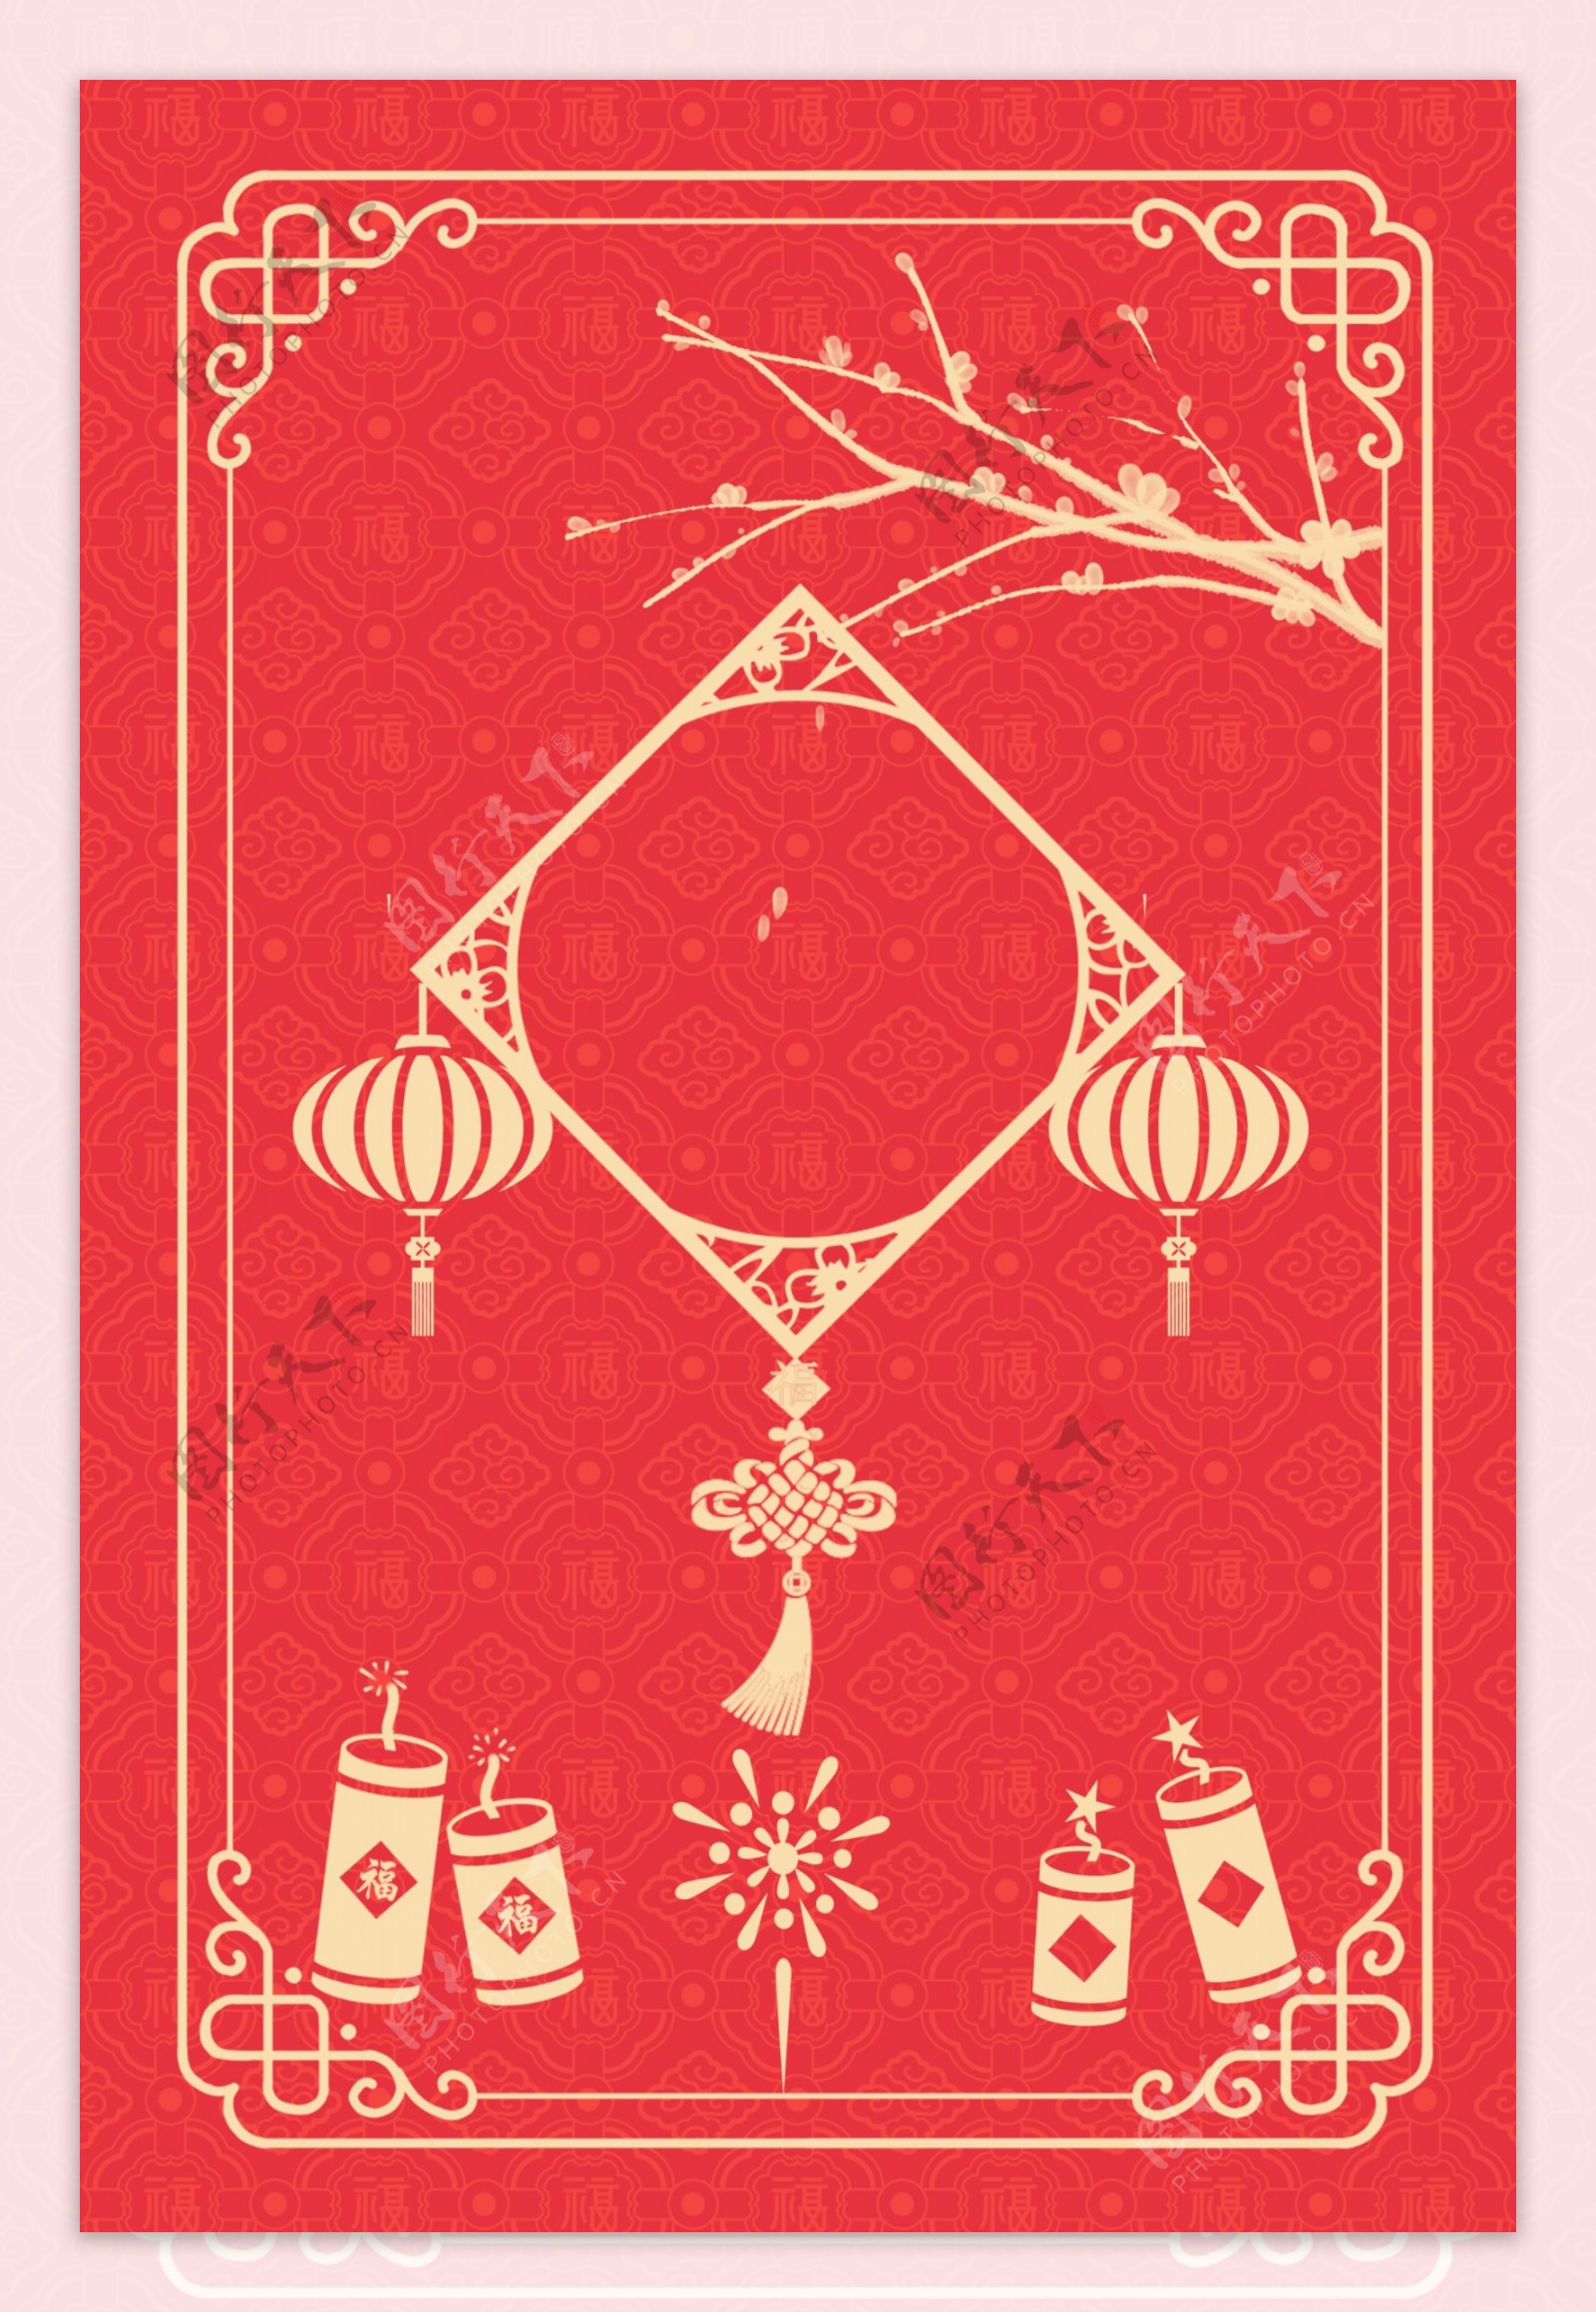 线条中国风喜庆新年签红色背景海报